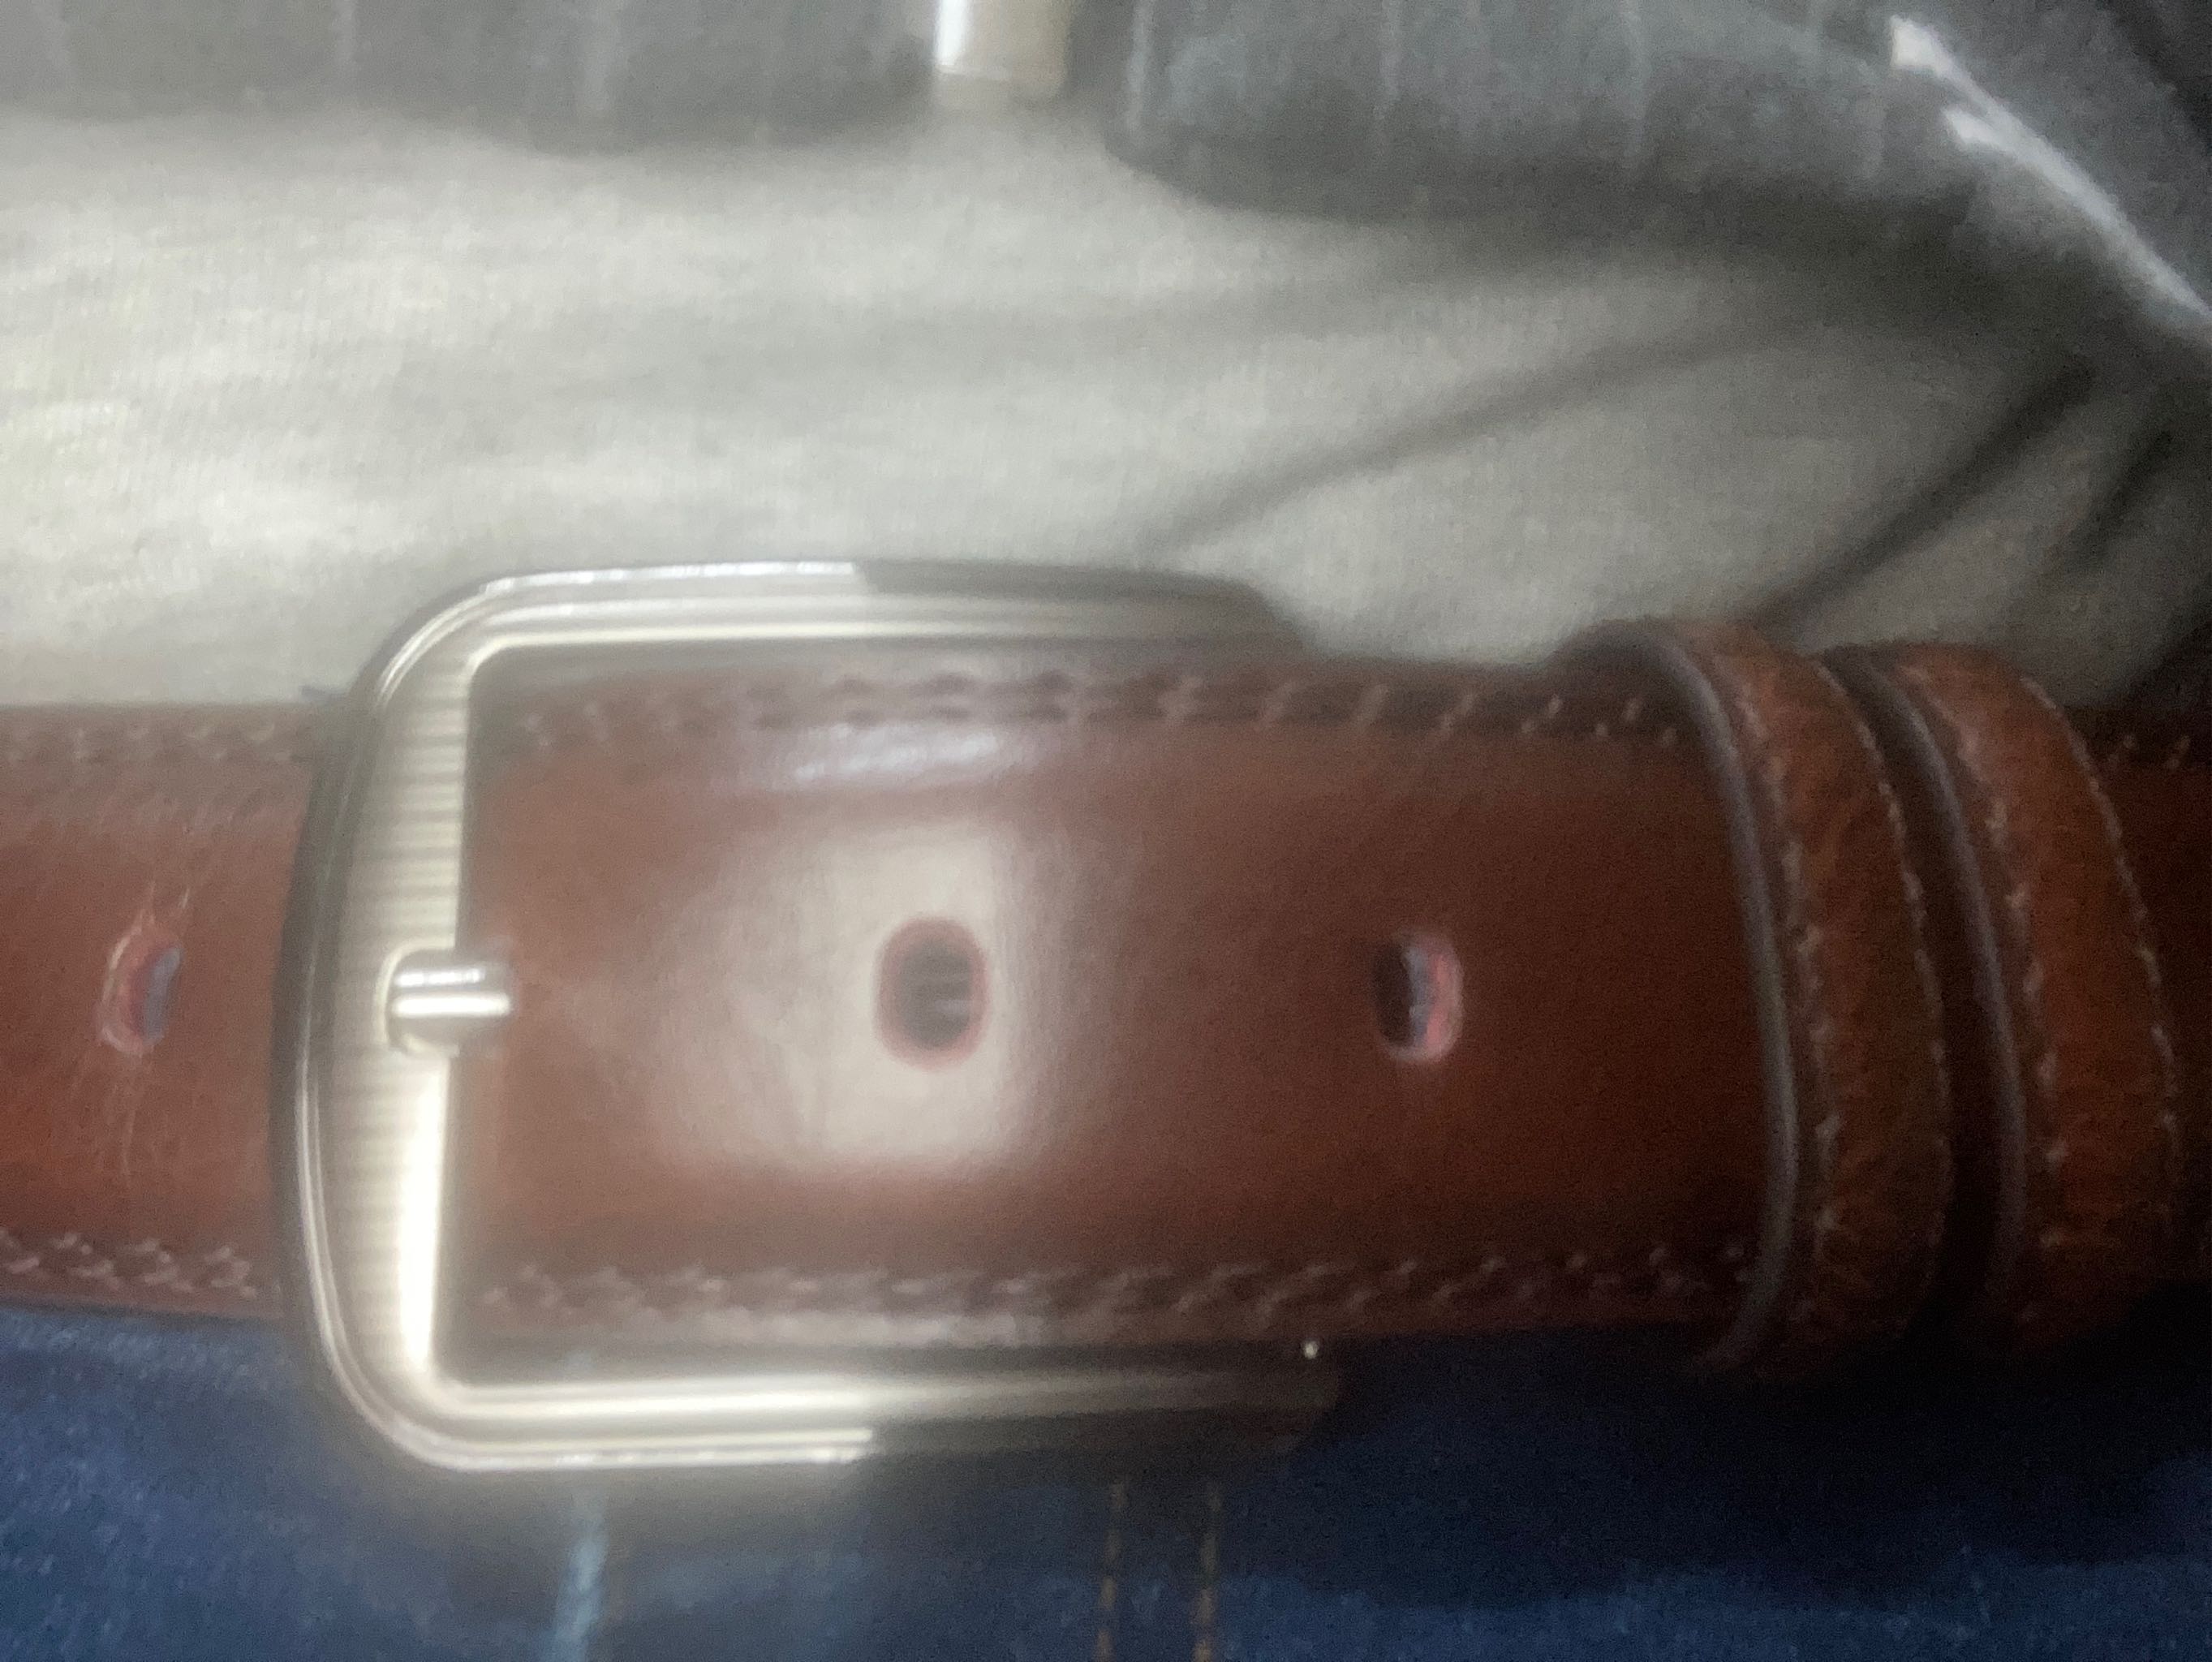 LouisWill Men's Belt Genuine Leather Belt For Jeans Men Fashion Design Belt  Pin Buckle With Leather Strap 120cm Adjustable Length Belt Business Dress  Male Belt